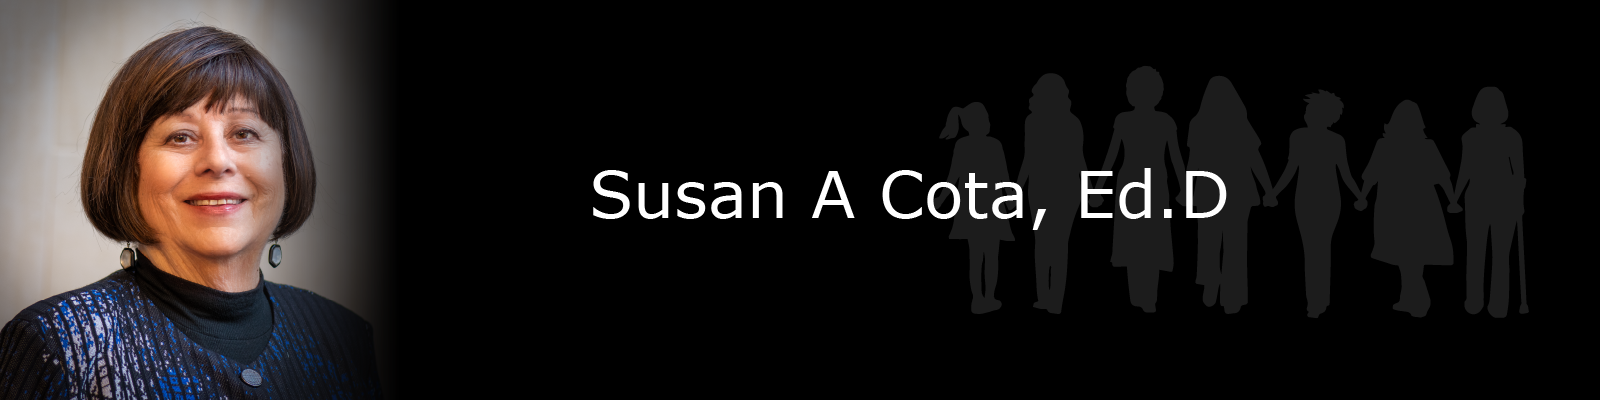 Photo of Susan A Cota, Ed.D.